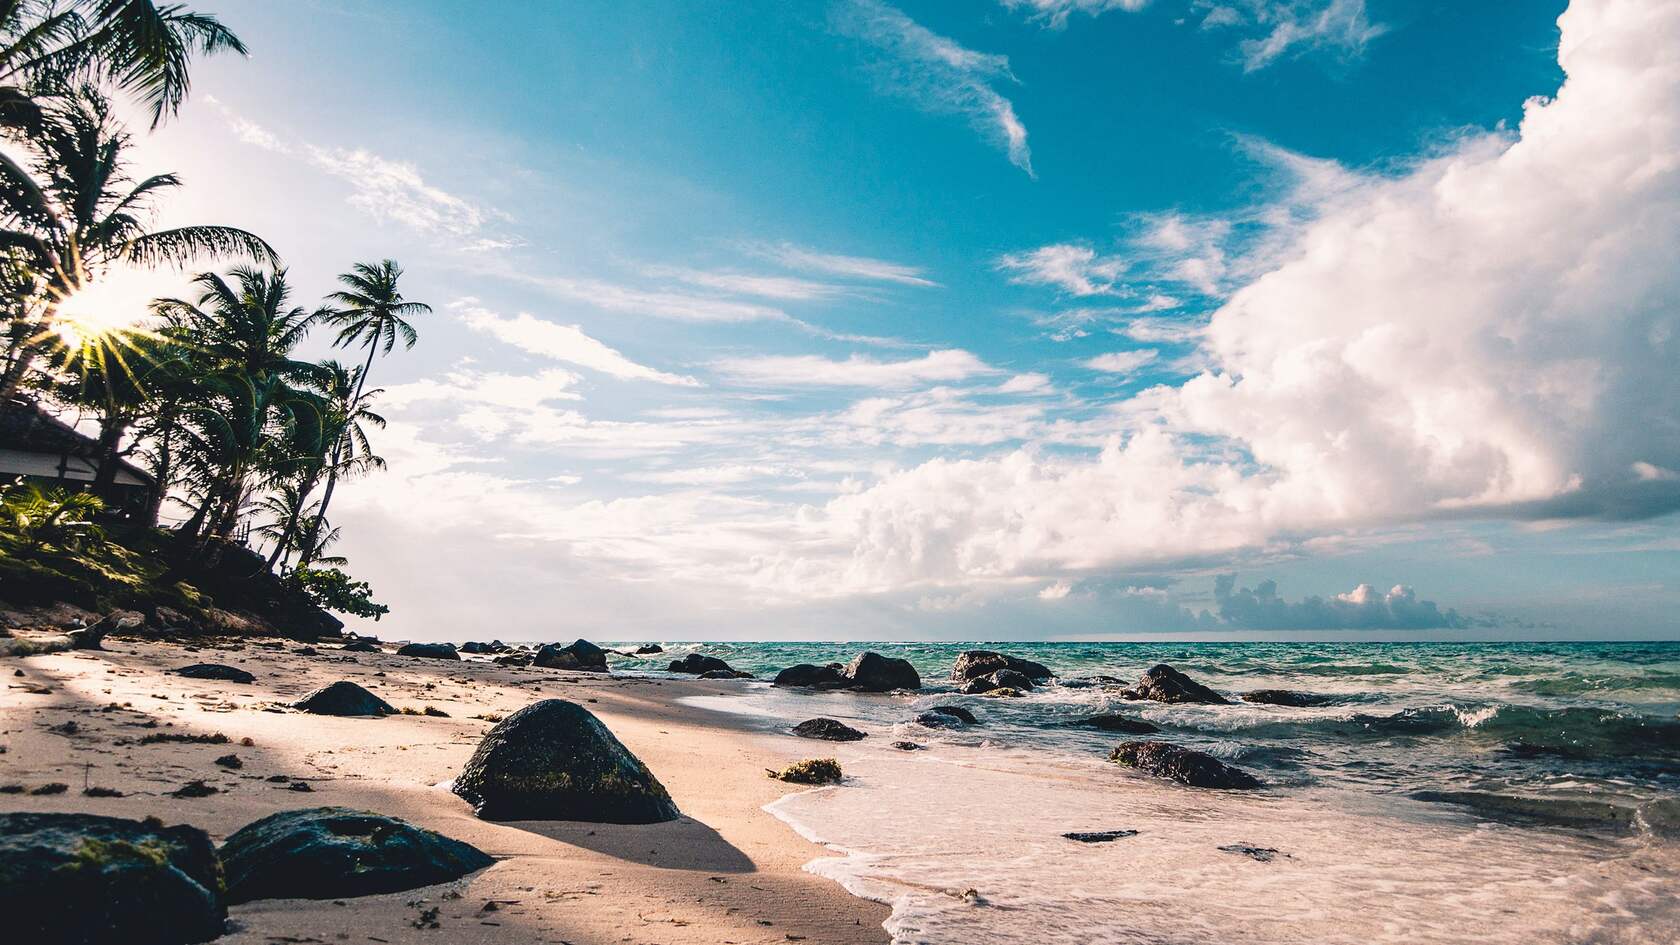 蓝天，白云，海浪，沙滩，礁石，椰树，唯美海边景色壁纸图片第1张图片